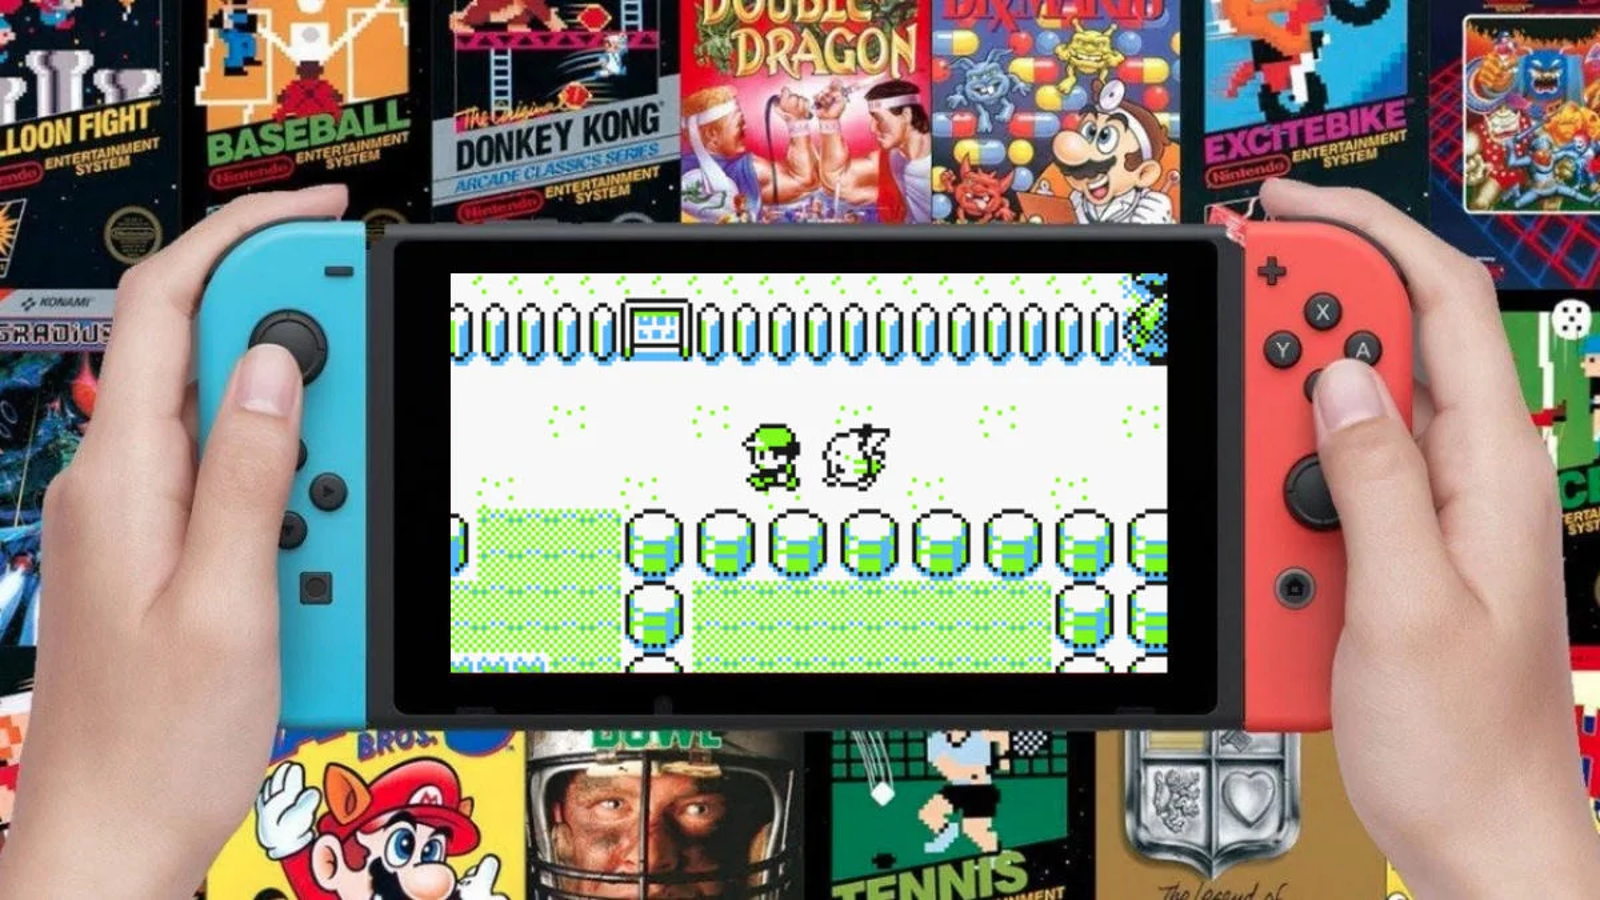 Game Boy – Nintendo Switch Online, Aplicações de download da Nintendo  Switch, Jogos